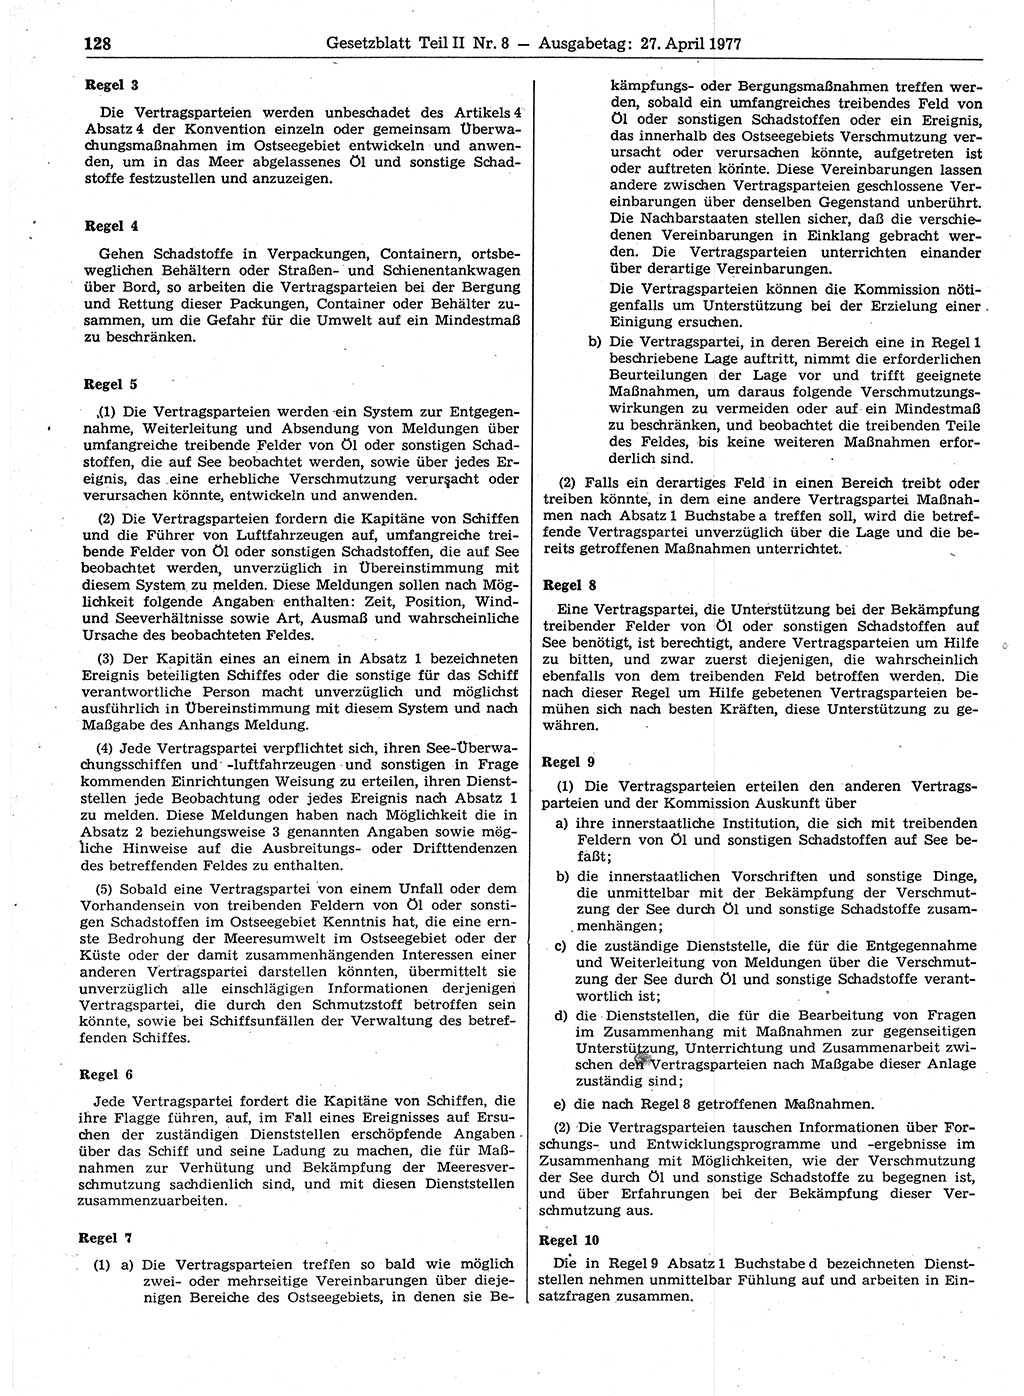 Gesetzblatt (GBl.) der Deutschen Demokratischen Republik (DDR) Teil ⅠⅠ 1977, Seite 128 (GBl. DDR ⅠⅠ 1977, S. 128)